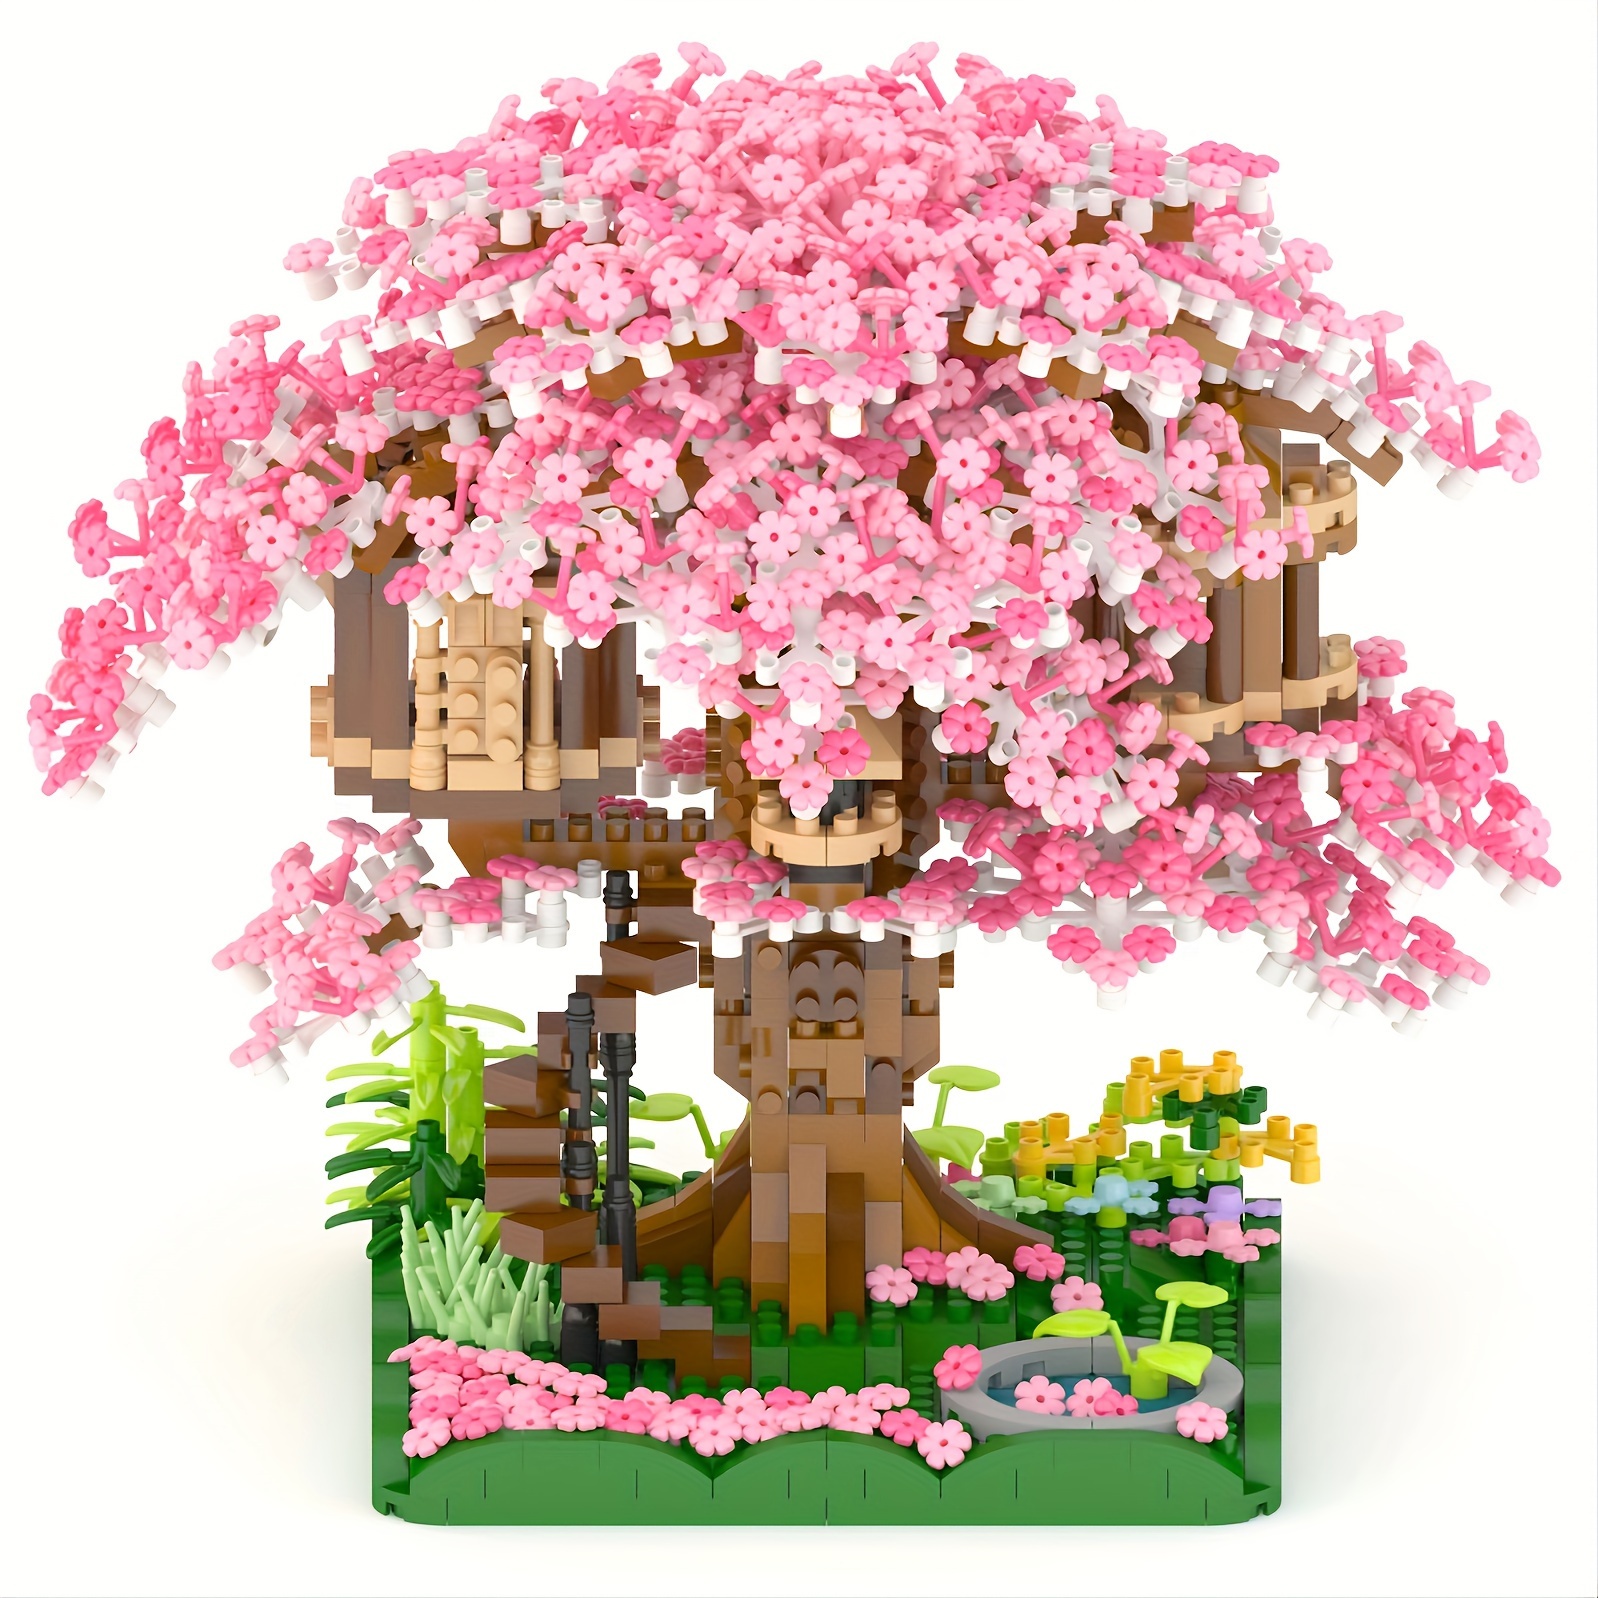 Auspcers Sakura Lot de 3308 blocs de construction Sakura - Maison d'arbre -  Fleur de cerisier - Kit de modélisation, blocs de construction - Maison